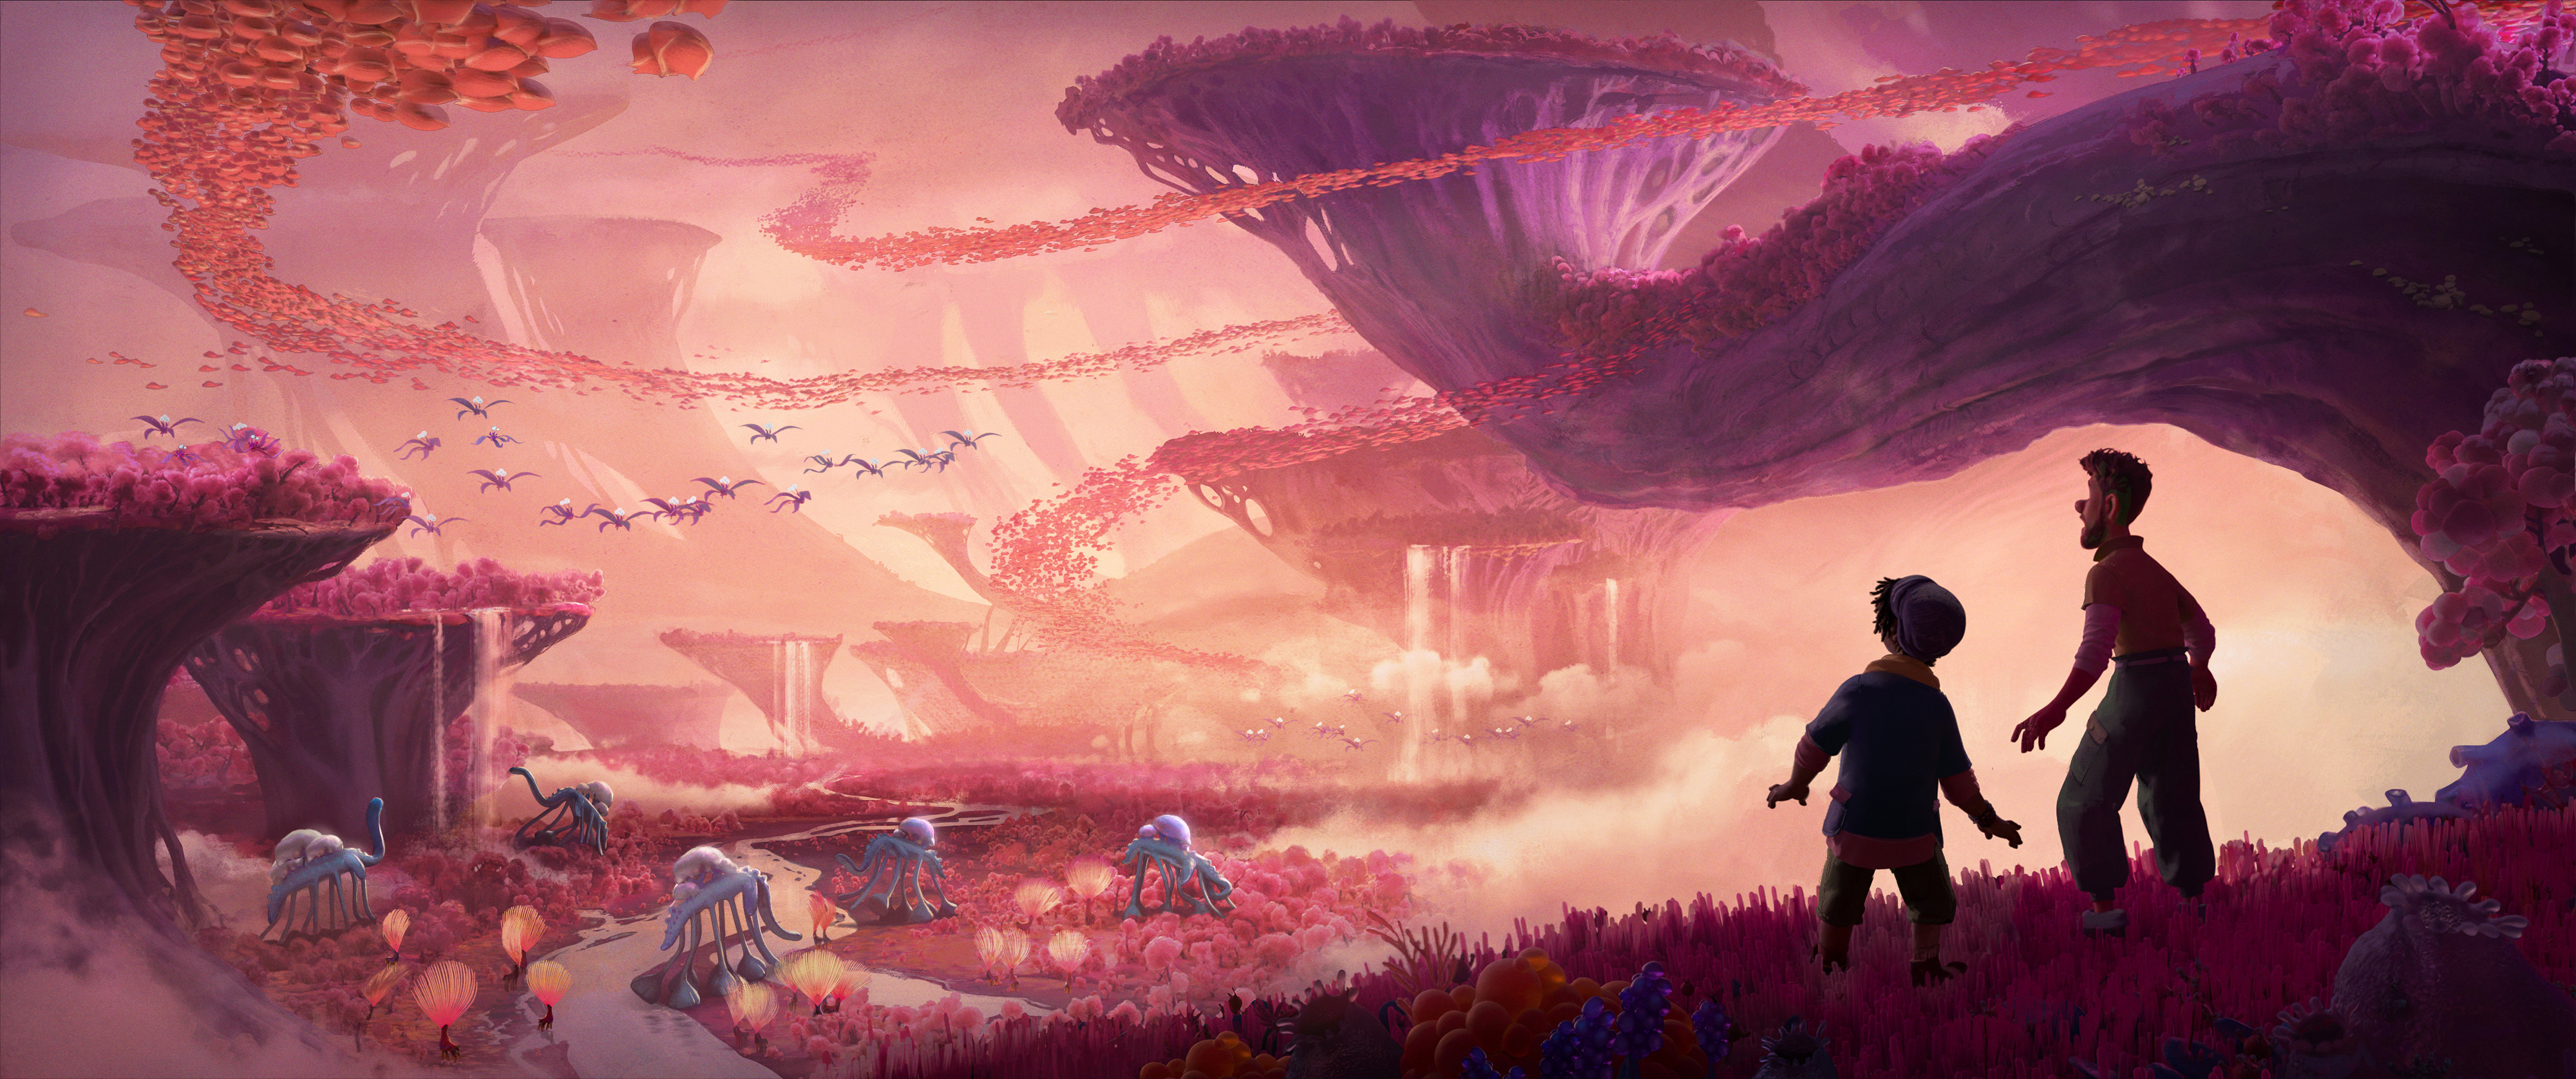  анімація «Незвичайний світ» від Disney